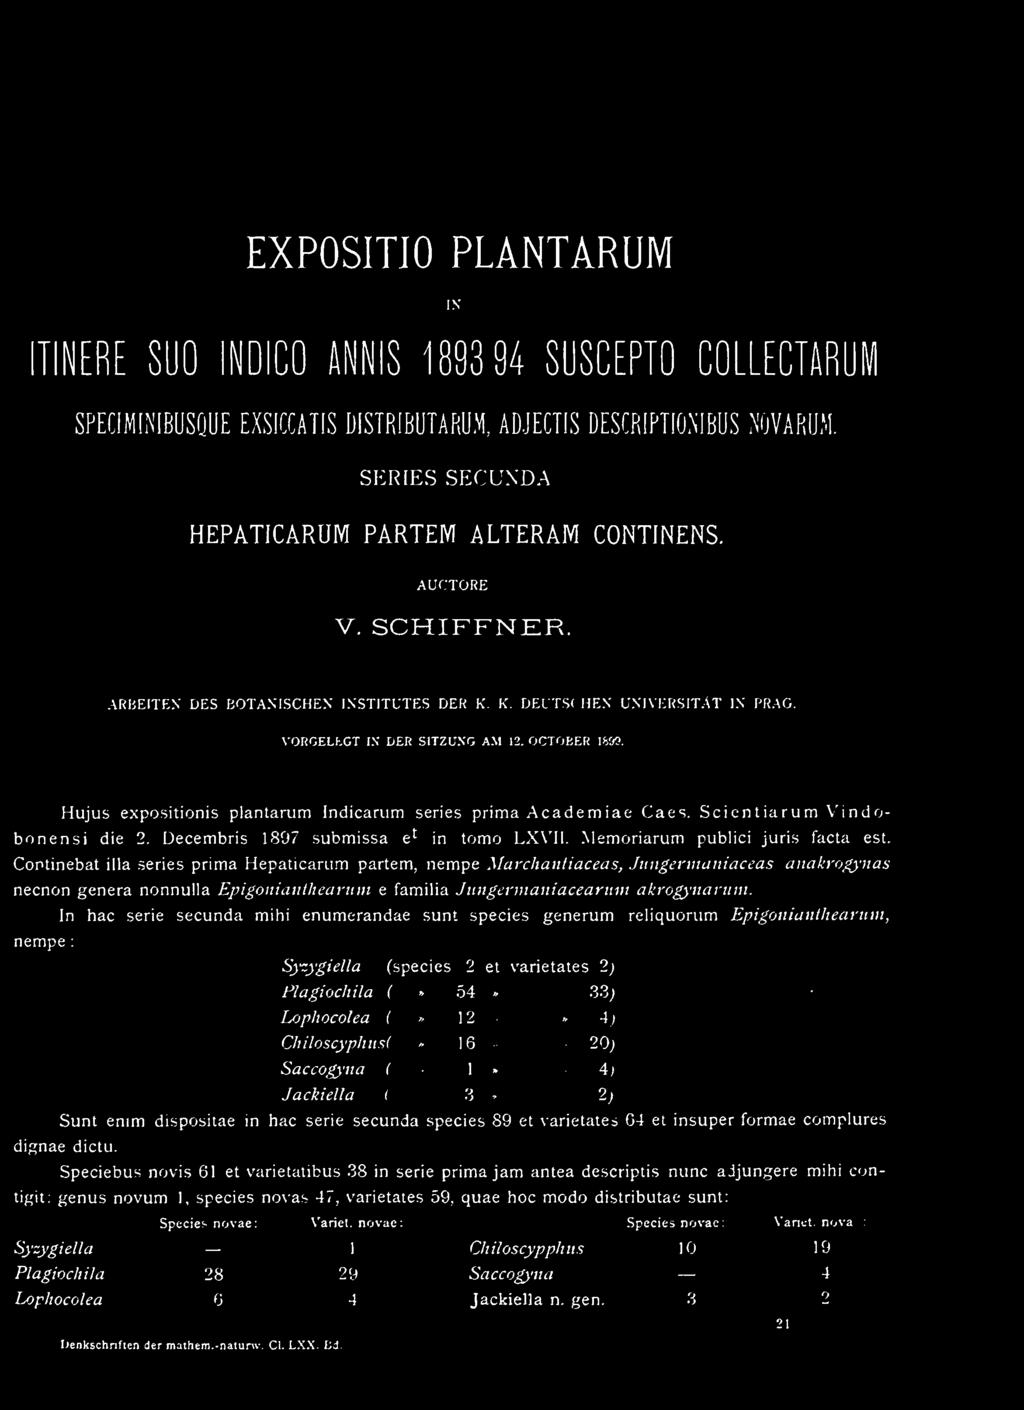 Hujus expositionis plantarum Indicarum series prima Academiae Caes. Scientiarum Vindobonensi die 2. Decembris 1897 submissa e^ in tomo LXVMI. Memoriarum publici juris facta est.